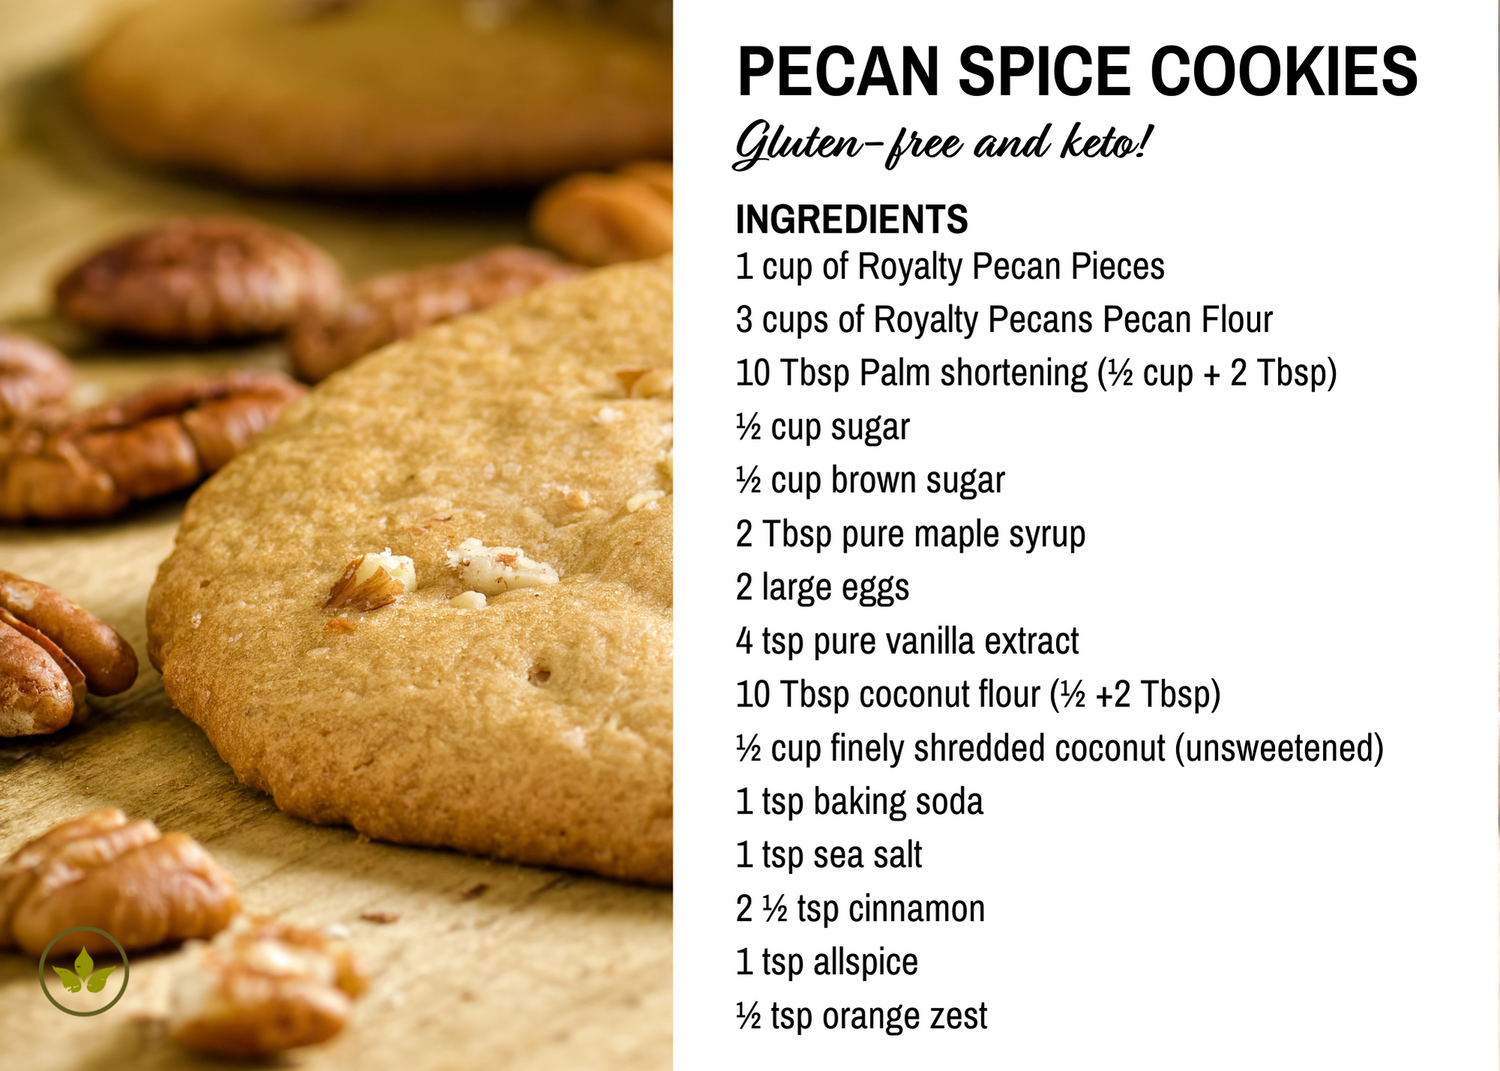 Pecan Spice Cookies